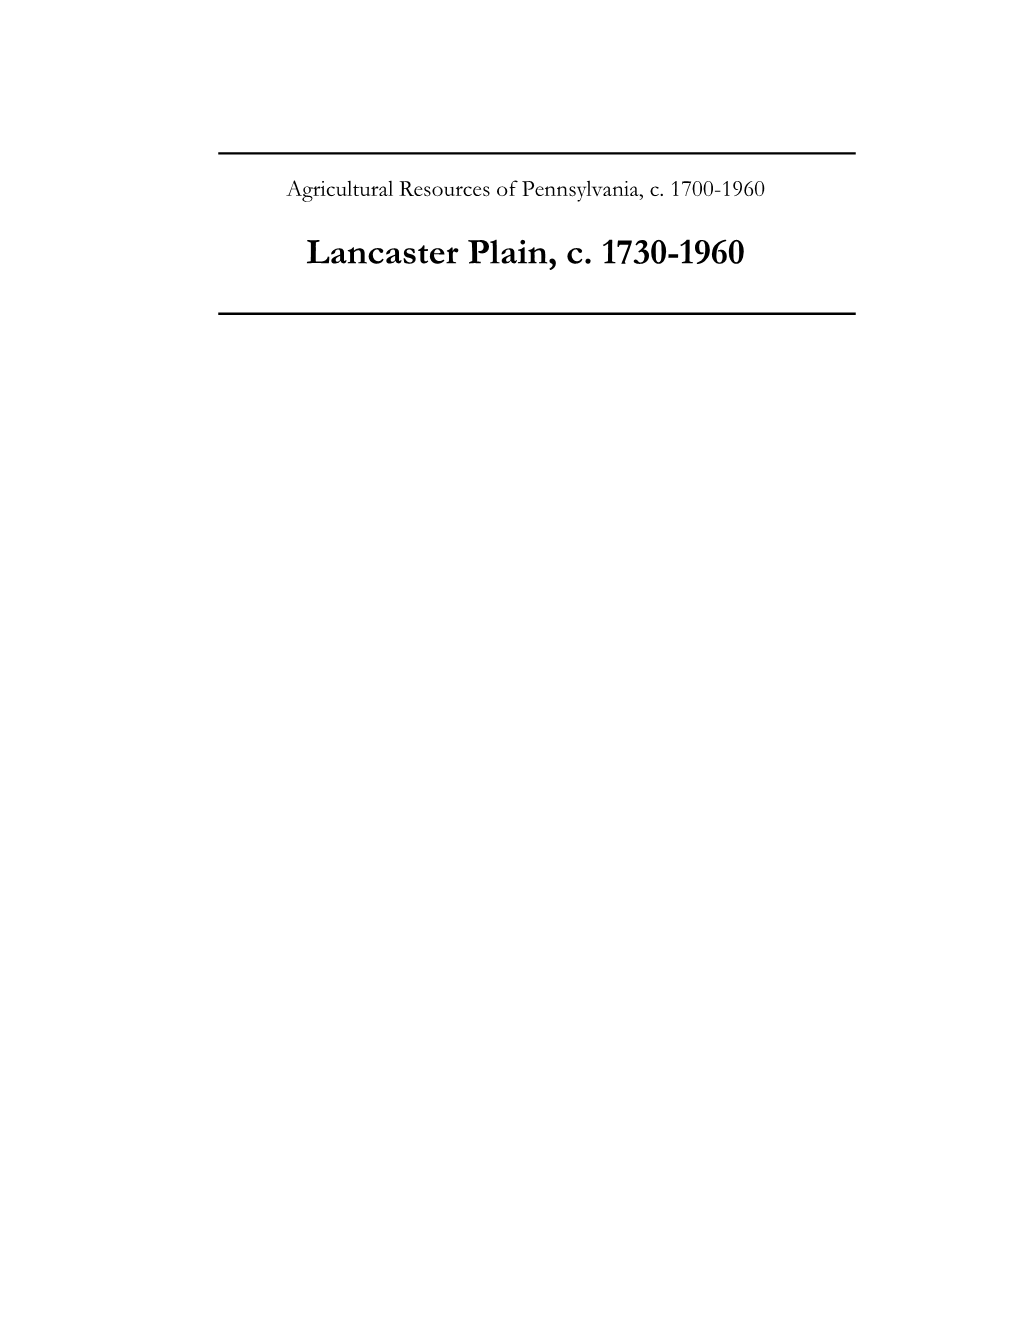 Lancaster Plain, C. 1730-1960